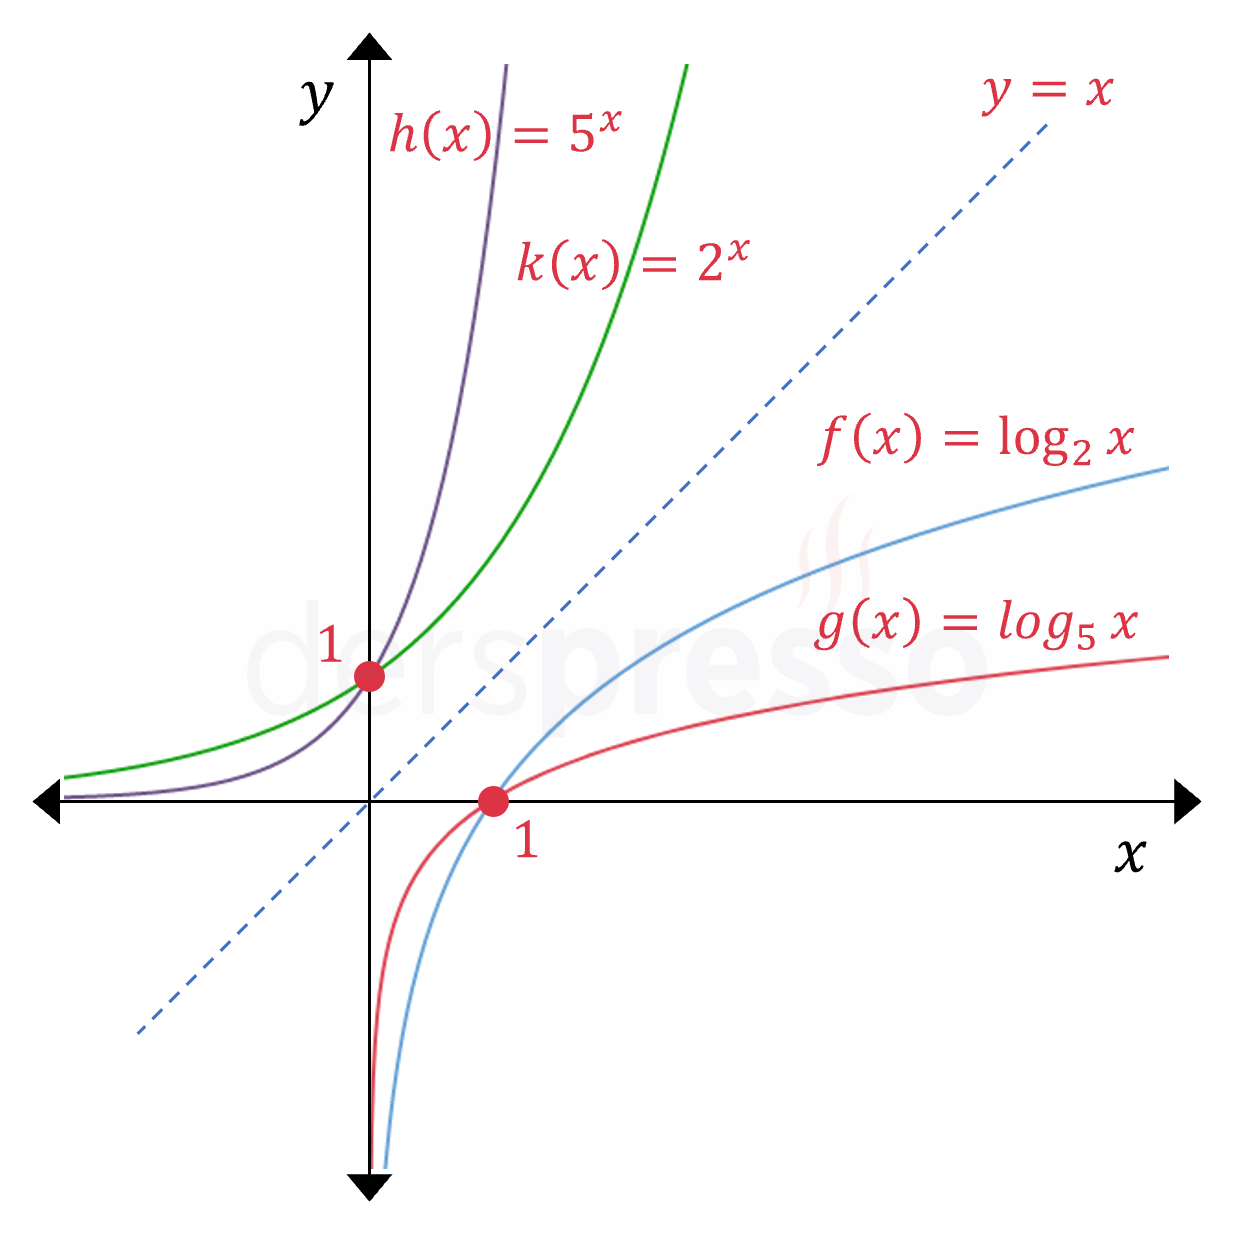 Üstel ve logaritma fonksiyon grafikleri